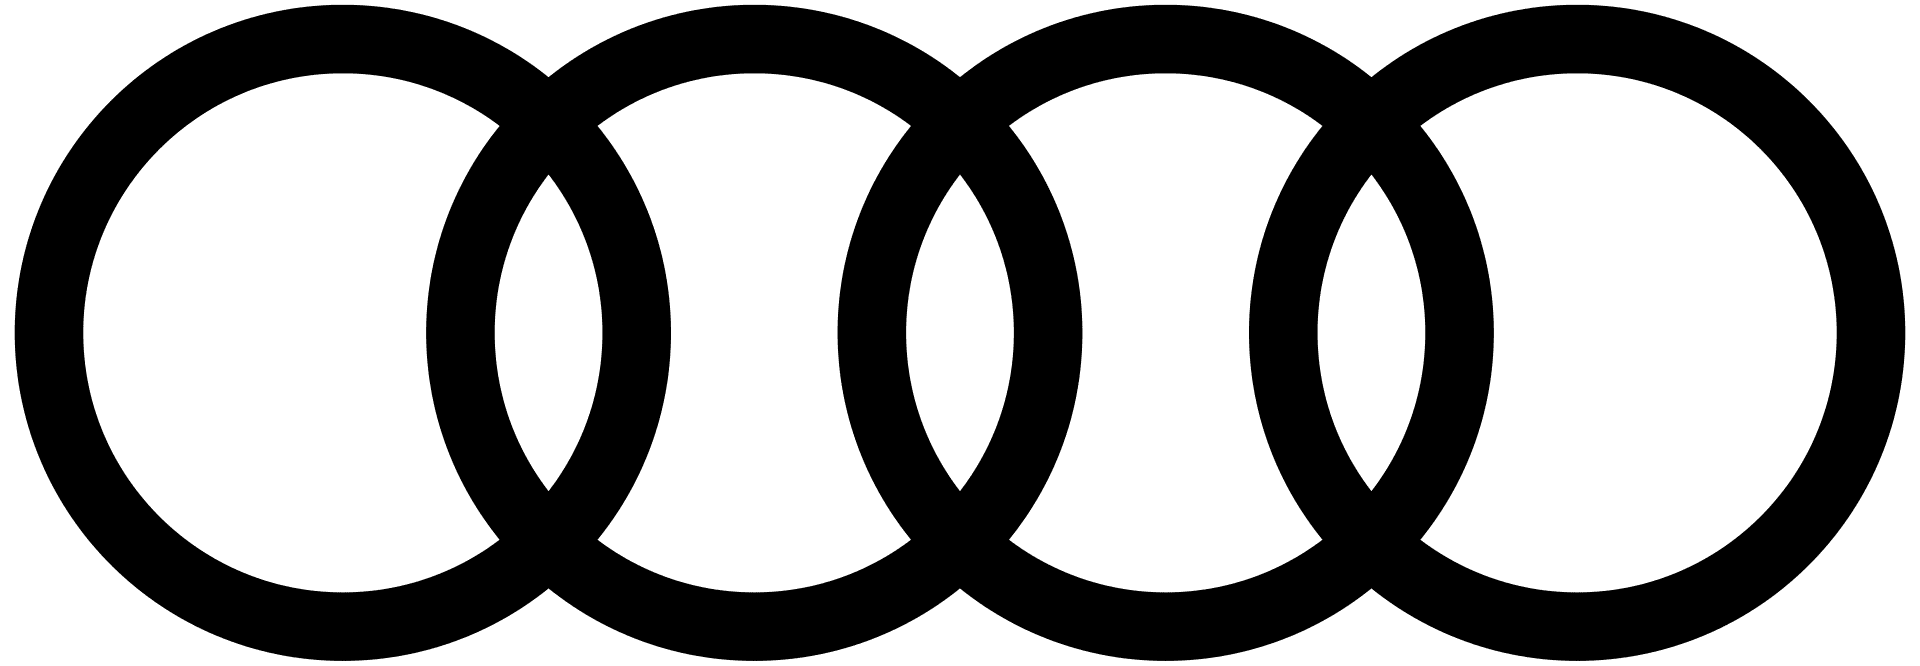 logo Audi  Audi logo, ? logo, Logos meaning